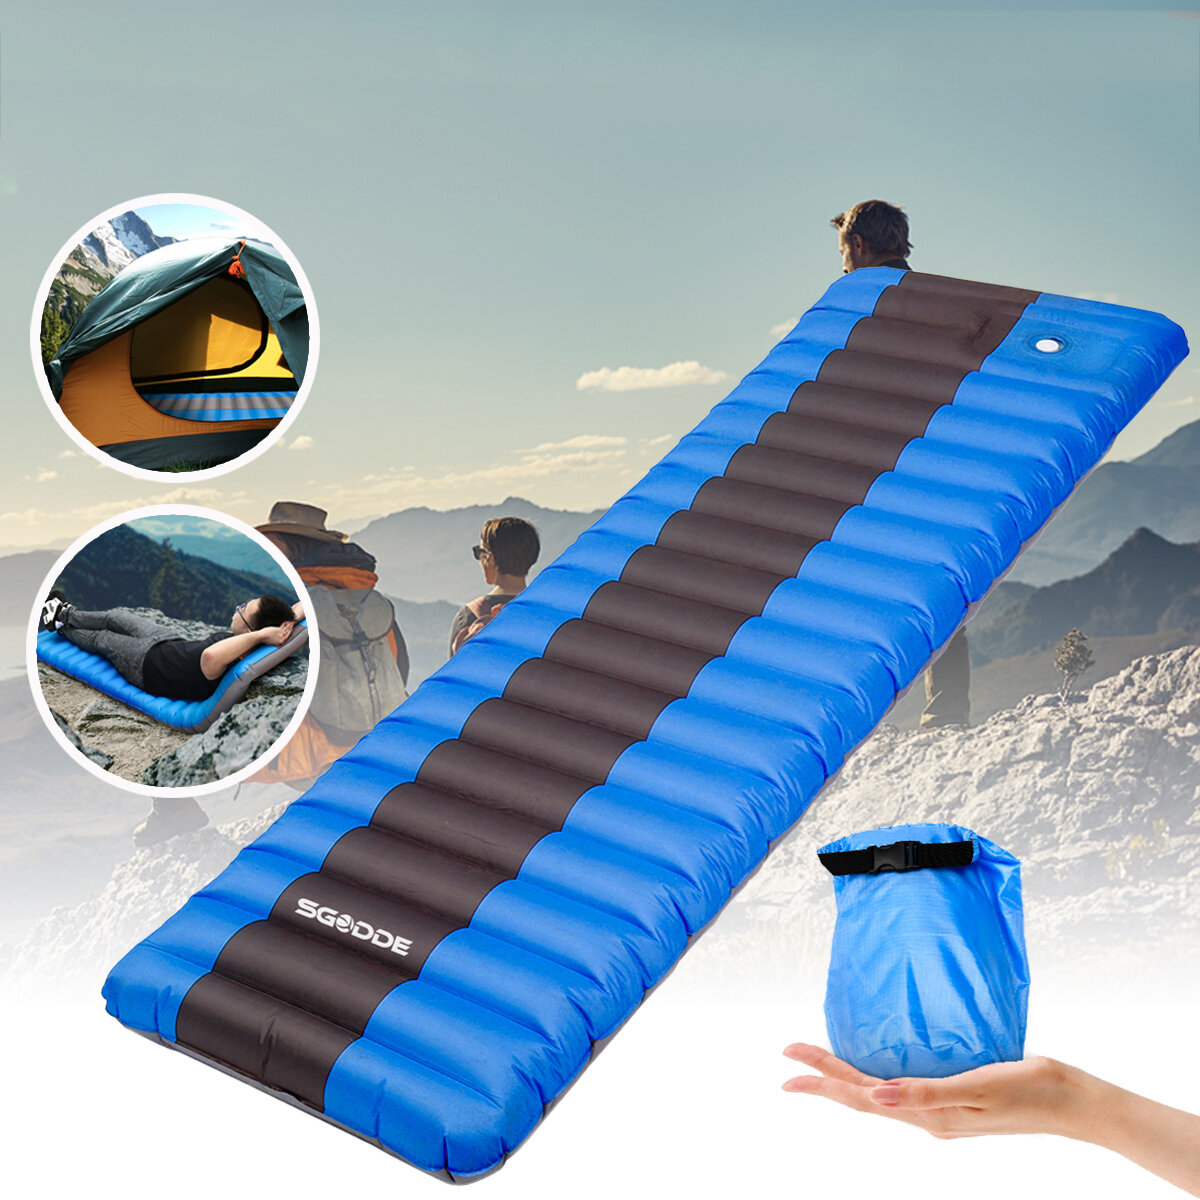 SGODDE超軽量防水インフレータブルマットキャンプマットレススリーピングクッションエアパッドアウトドアキャンプハイキングピクニック用